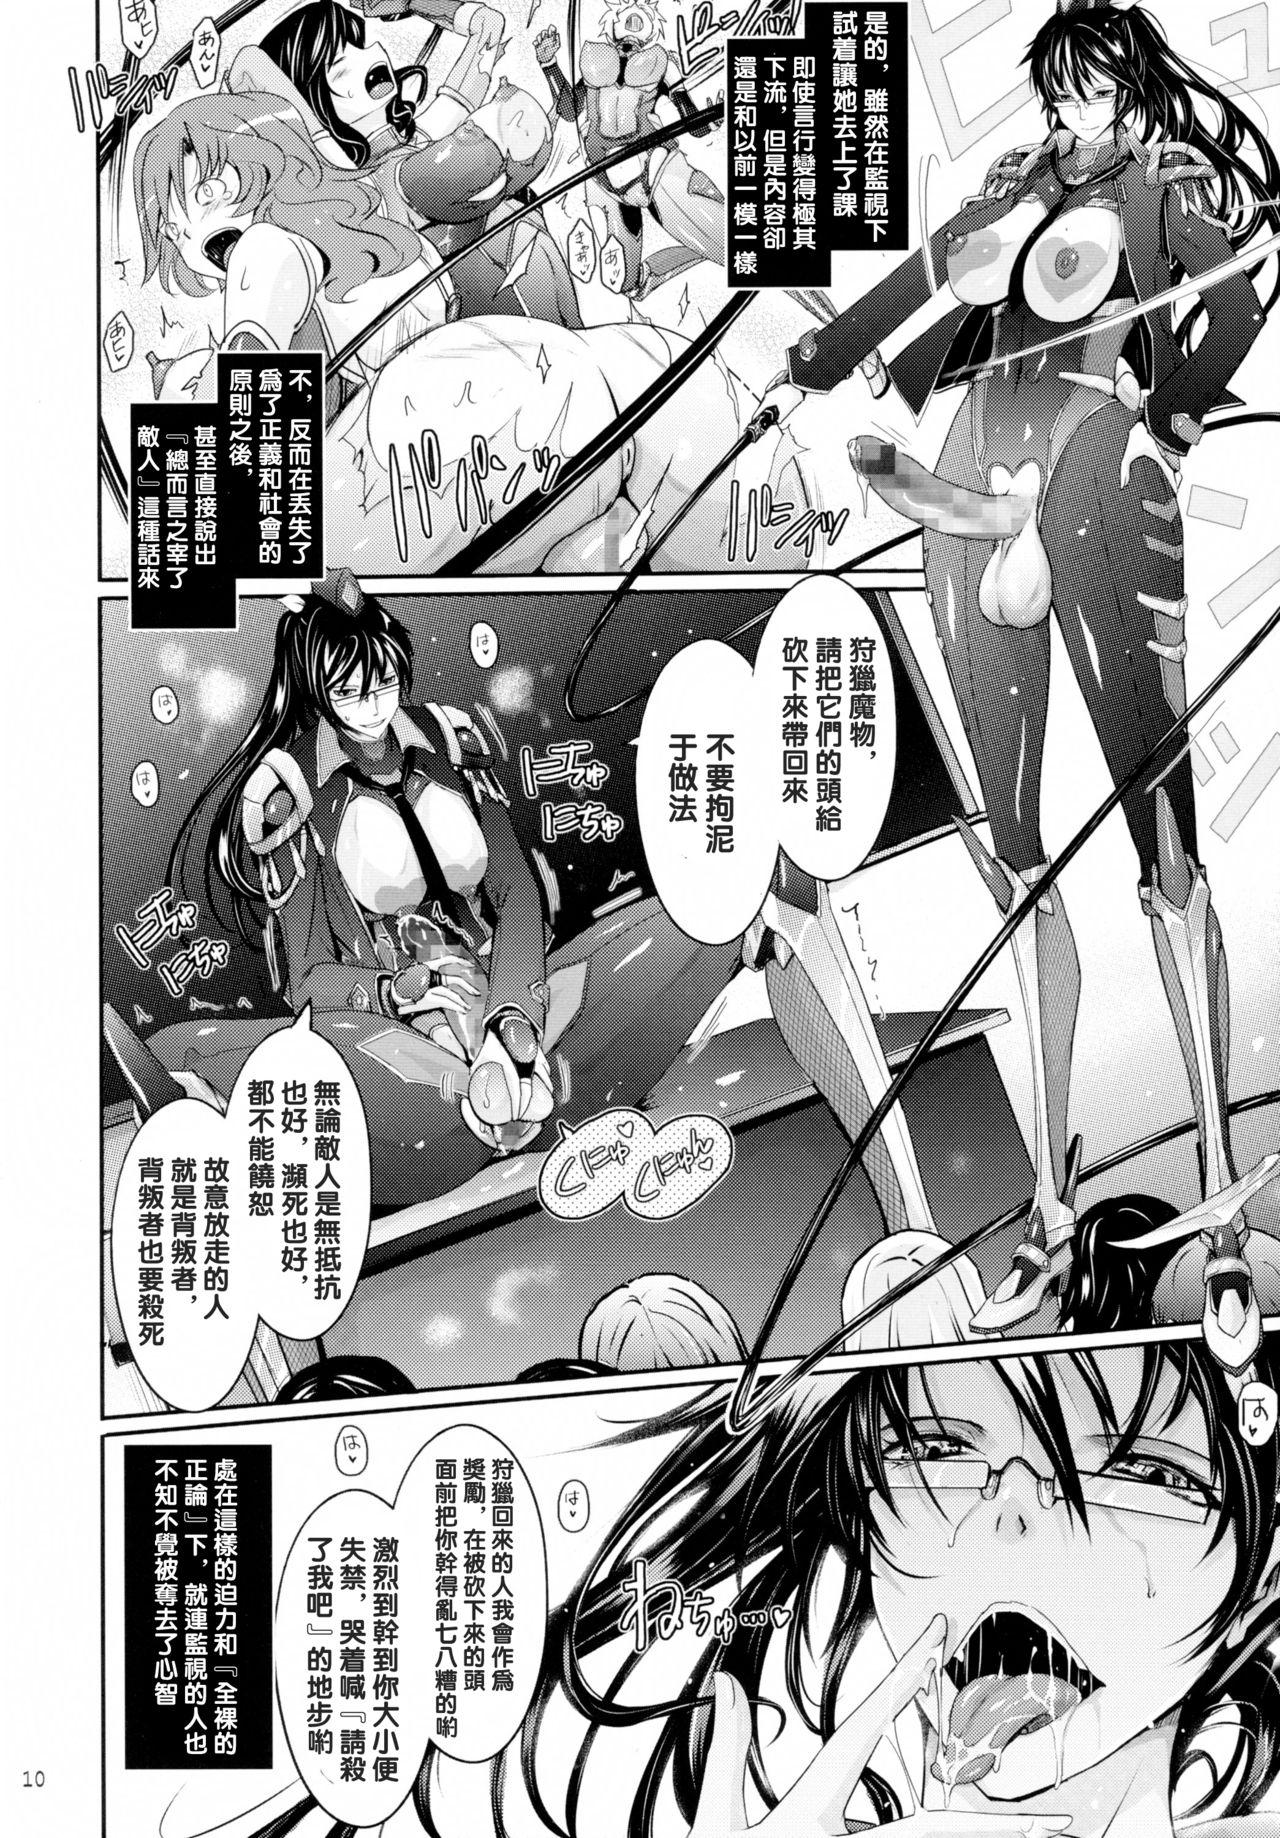 Glam Taimanin Hasuma Reiko Gokuraku no Arena - Taimanin asagi Peituda - Page 9